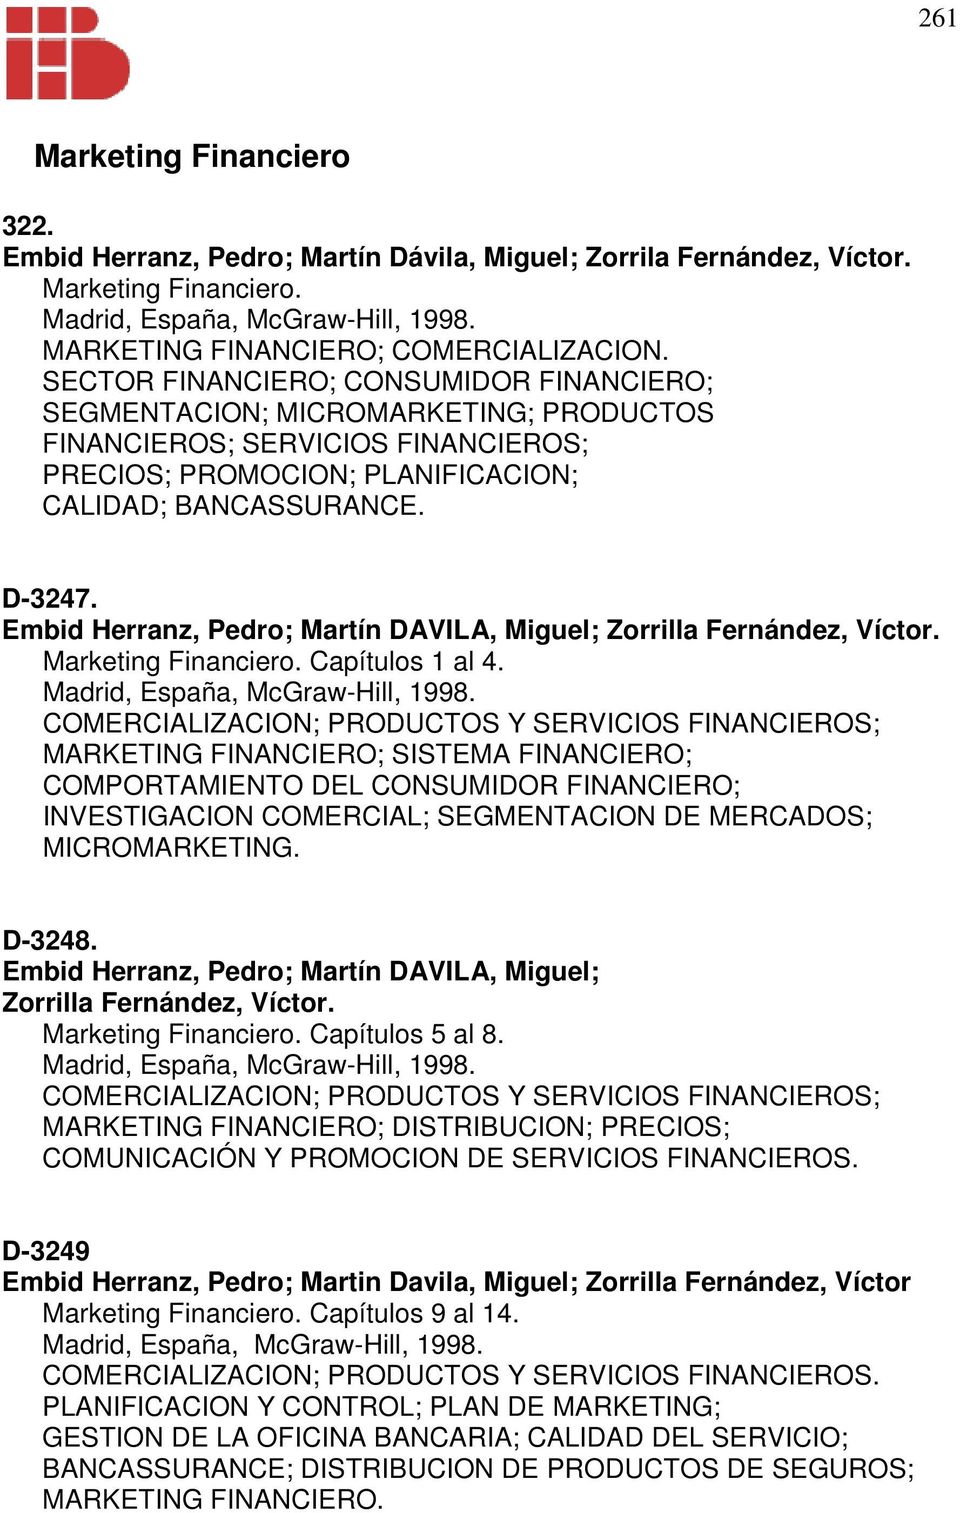 D-3247. Embid Herranz, Pedro; Martín DAVILA, Miguel; Zorrilla Fernández, Víctor. Marketing Financiero. Capítulos 1 al 4. Madrid, España, McGraw-Hill, 1998.